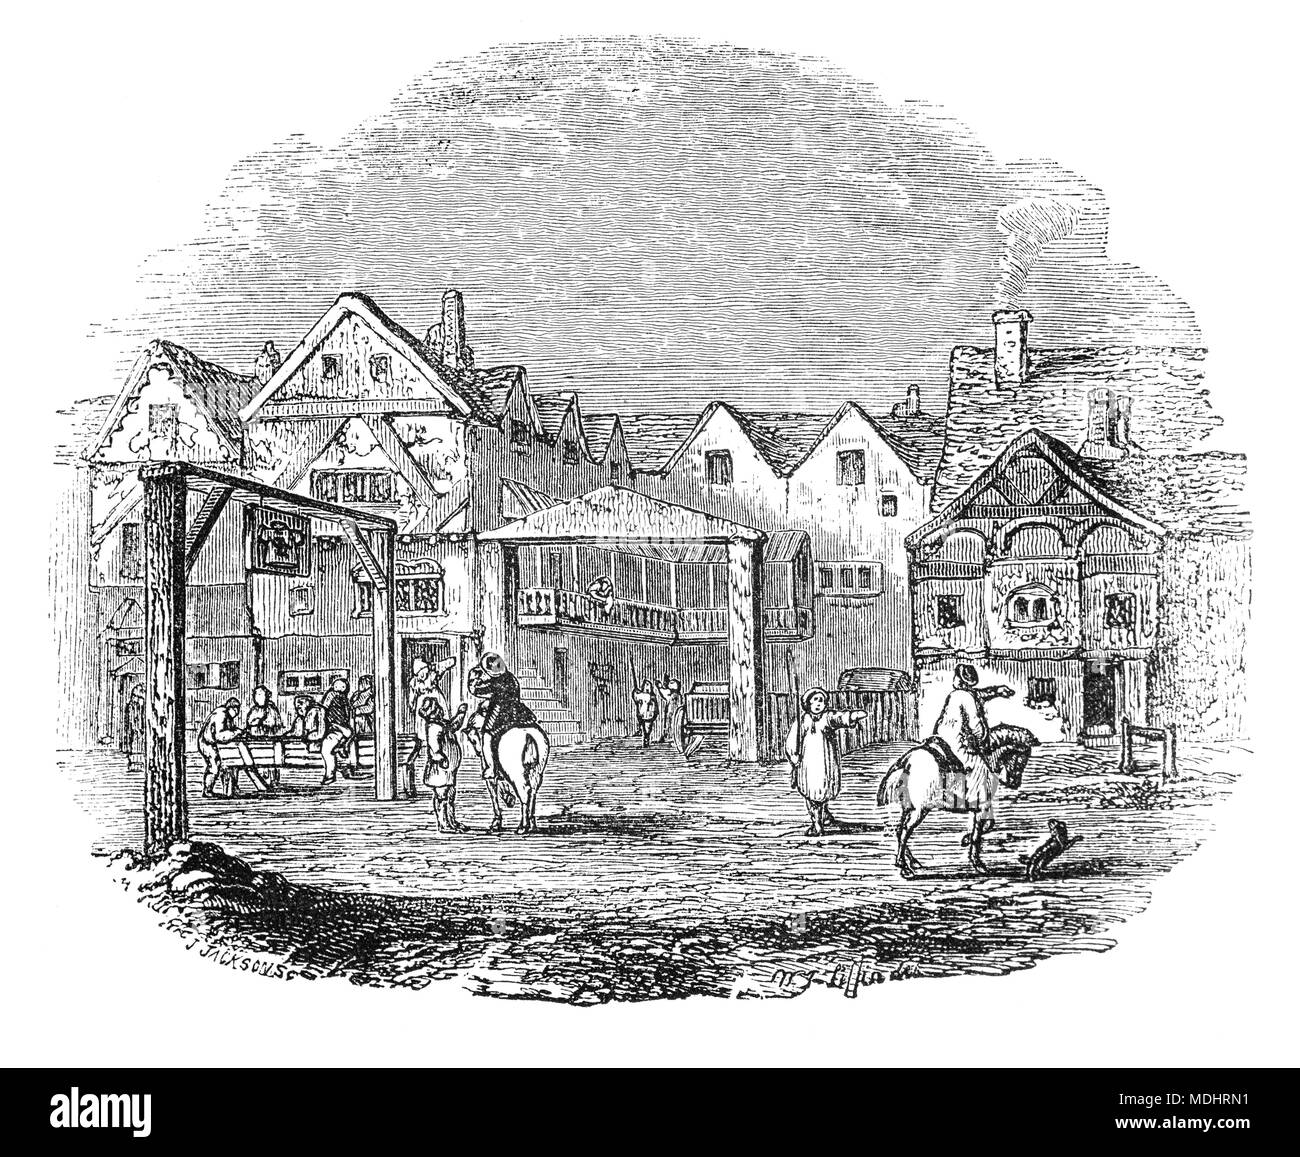 Vue sur la rue du Tabard, une auberge historique qui se trouvait sur le côté est de Borough High Street à Southwark. L'hôtellerie a été créé en 1307 et se trouvait sur l'ancienne artère principale qui conduit au sud de Londres. C'était l'endroit où les pèlerins s'est réuni pour la première fois sur leur voyage à Canterbury dans les années 1380 dans les Contes de Canterbury de Geoffrey Chaucer. Banque D'Images